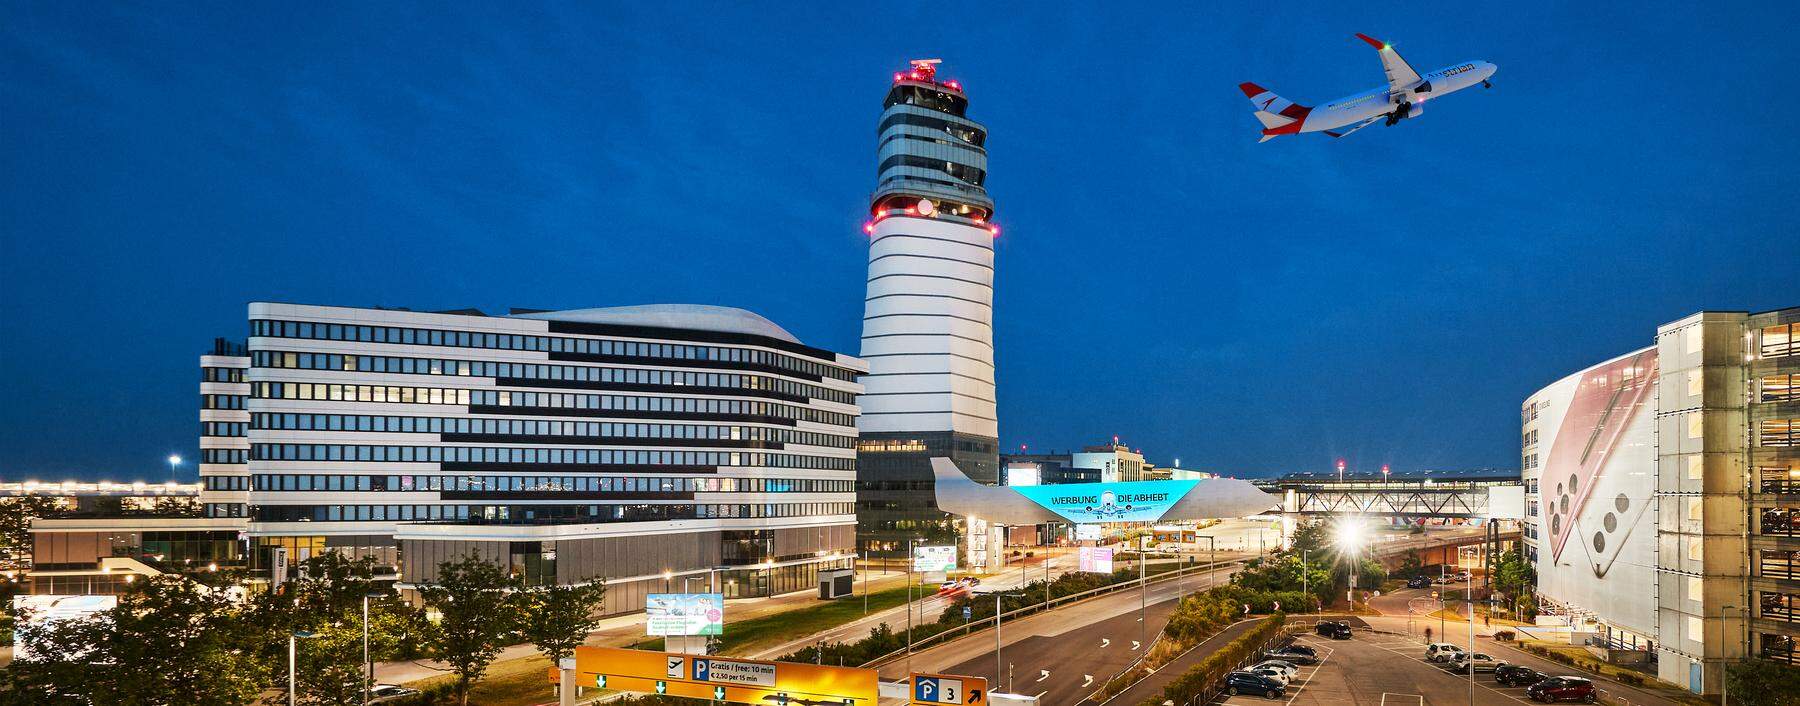 Von 64.000 auf rund 30 Millionen Passagiere: Seit seiner Gründung 1954 bis heute verzeichnet der Flughafen Wien eine beeindruckende Entwicklung.